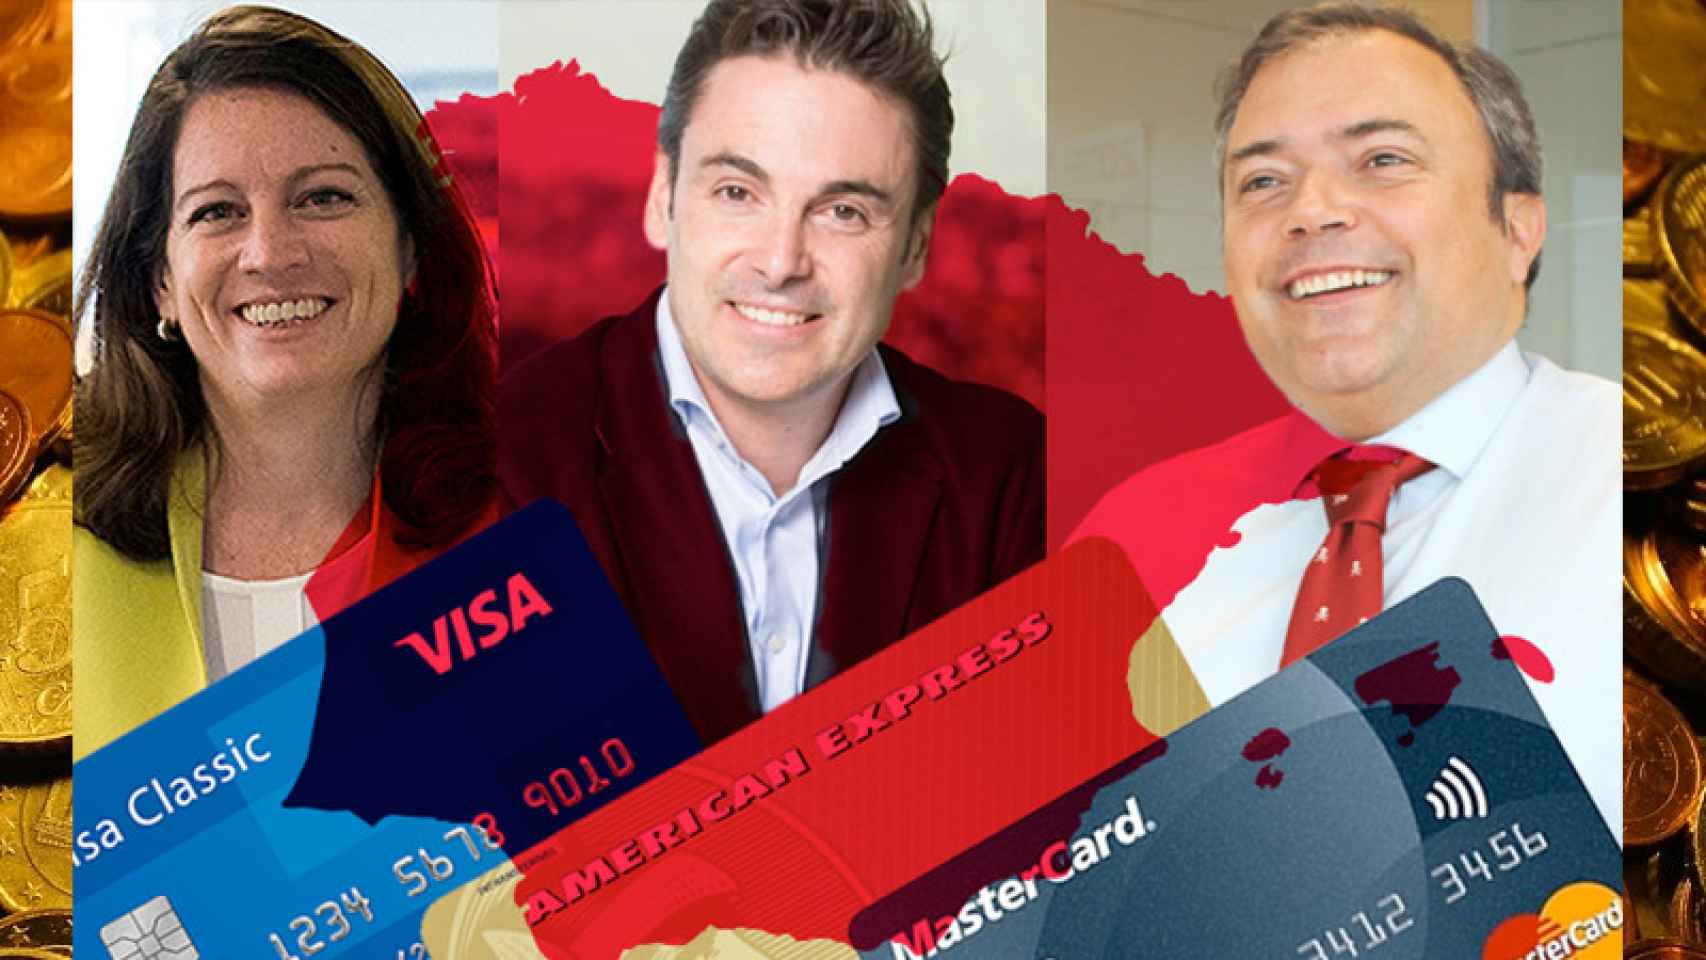 El dinero de plástico Visa, American Express y MasterCard con sus máximos directivos, Carmen Alonso, Juan Orti y Ovidio Egido, respectivamente | Fotomontaje CG